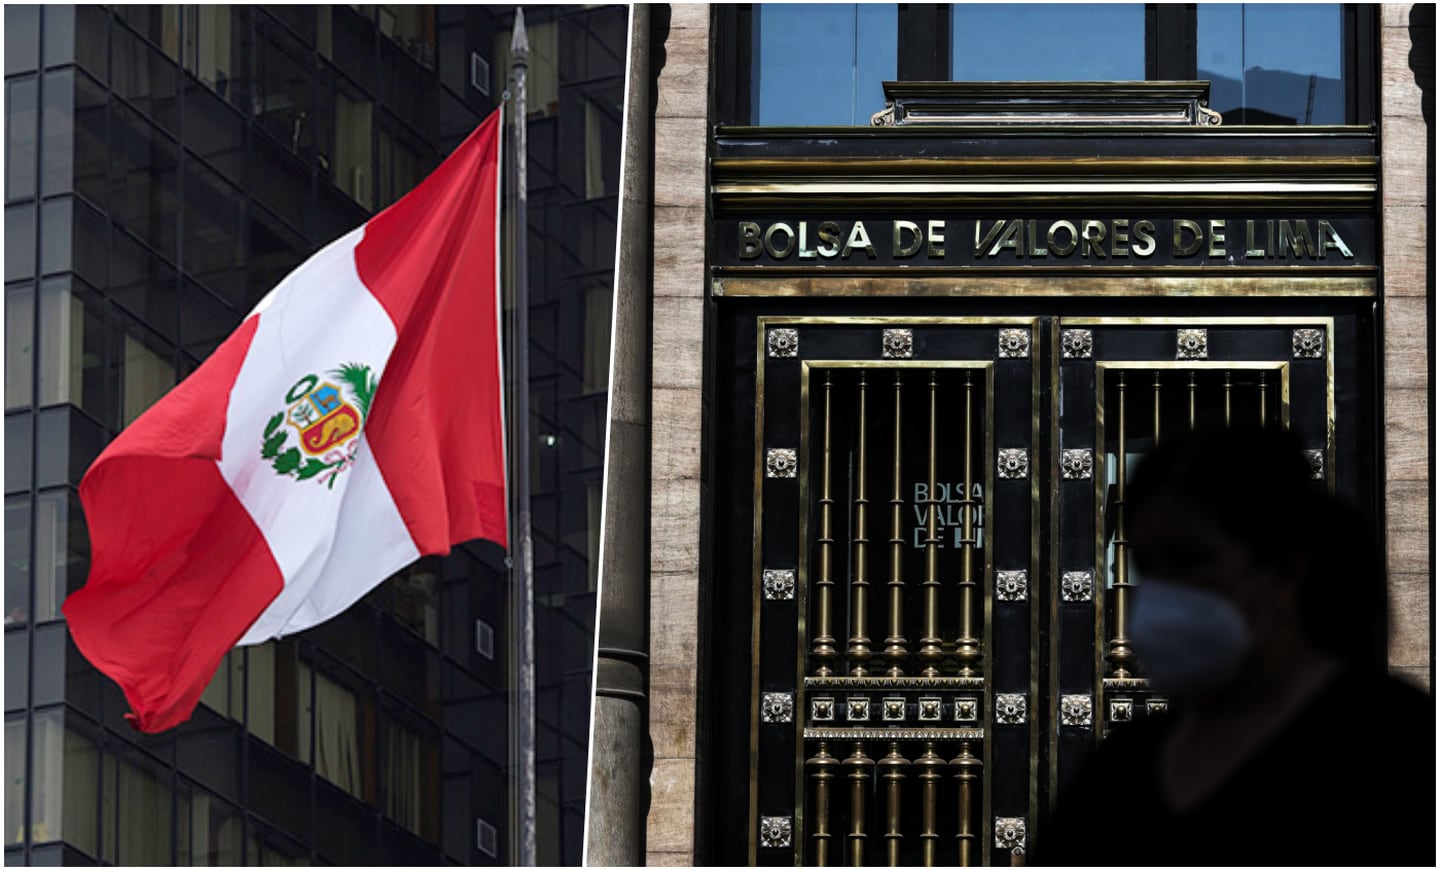 A la derecha, la fachada de la sede de la Bolsa de Valores de Lima. El cobre es la principal materia prima de exportación de Perú.